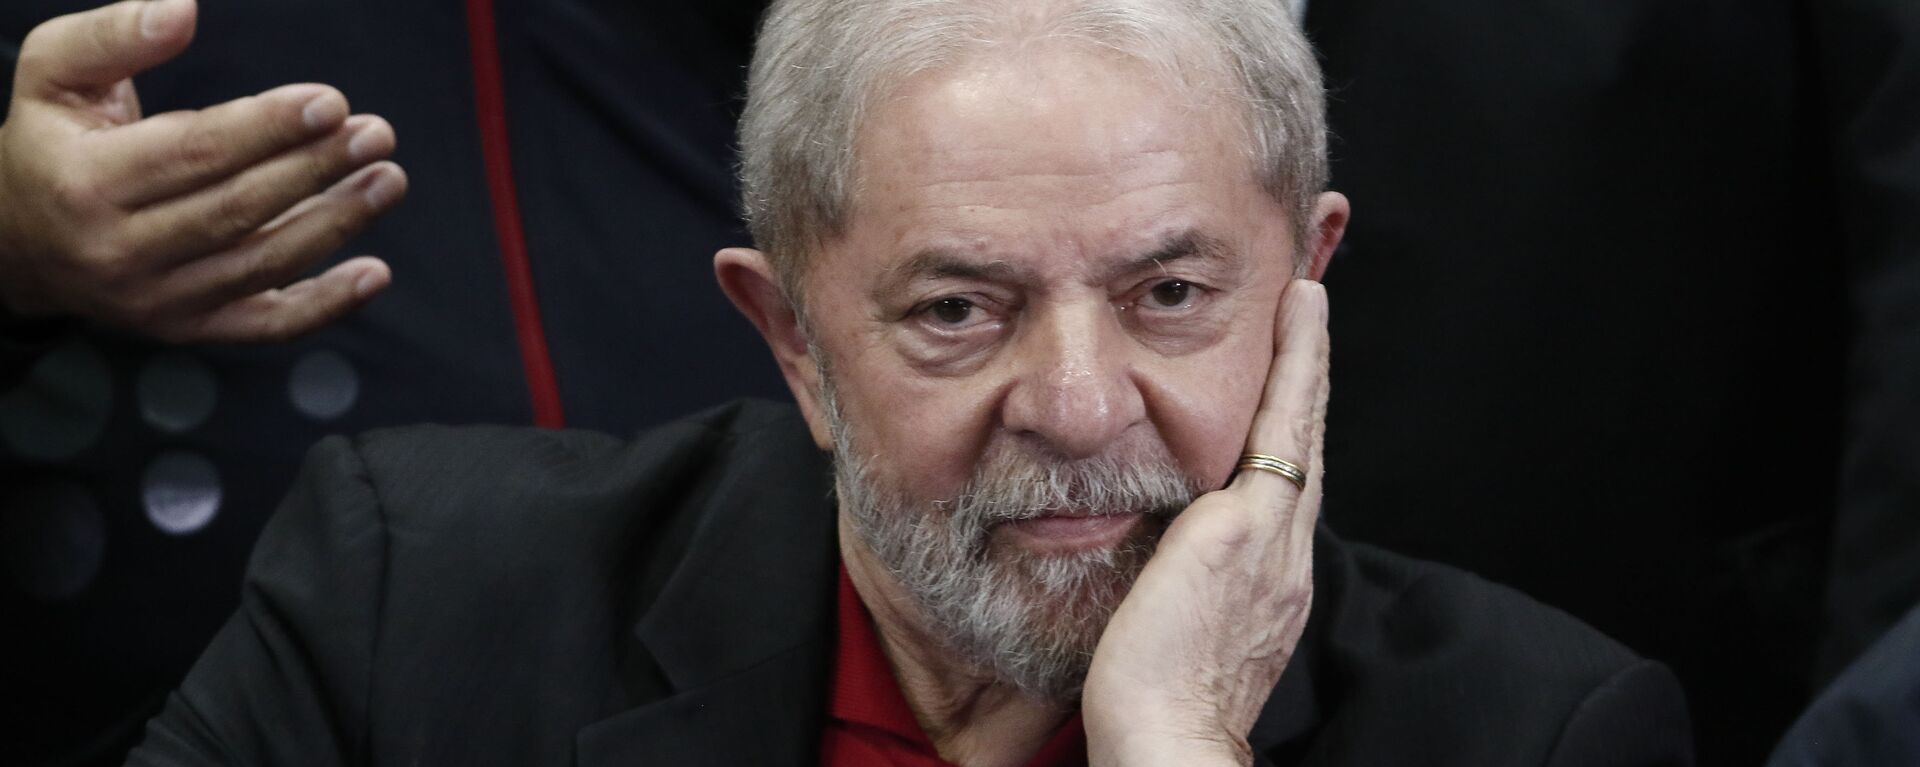 Luiz Inácio Lula da Silva, expresidente brasileño - Sputnik Mundo, 1920, 10.06.2019